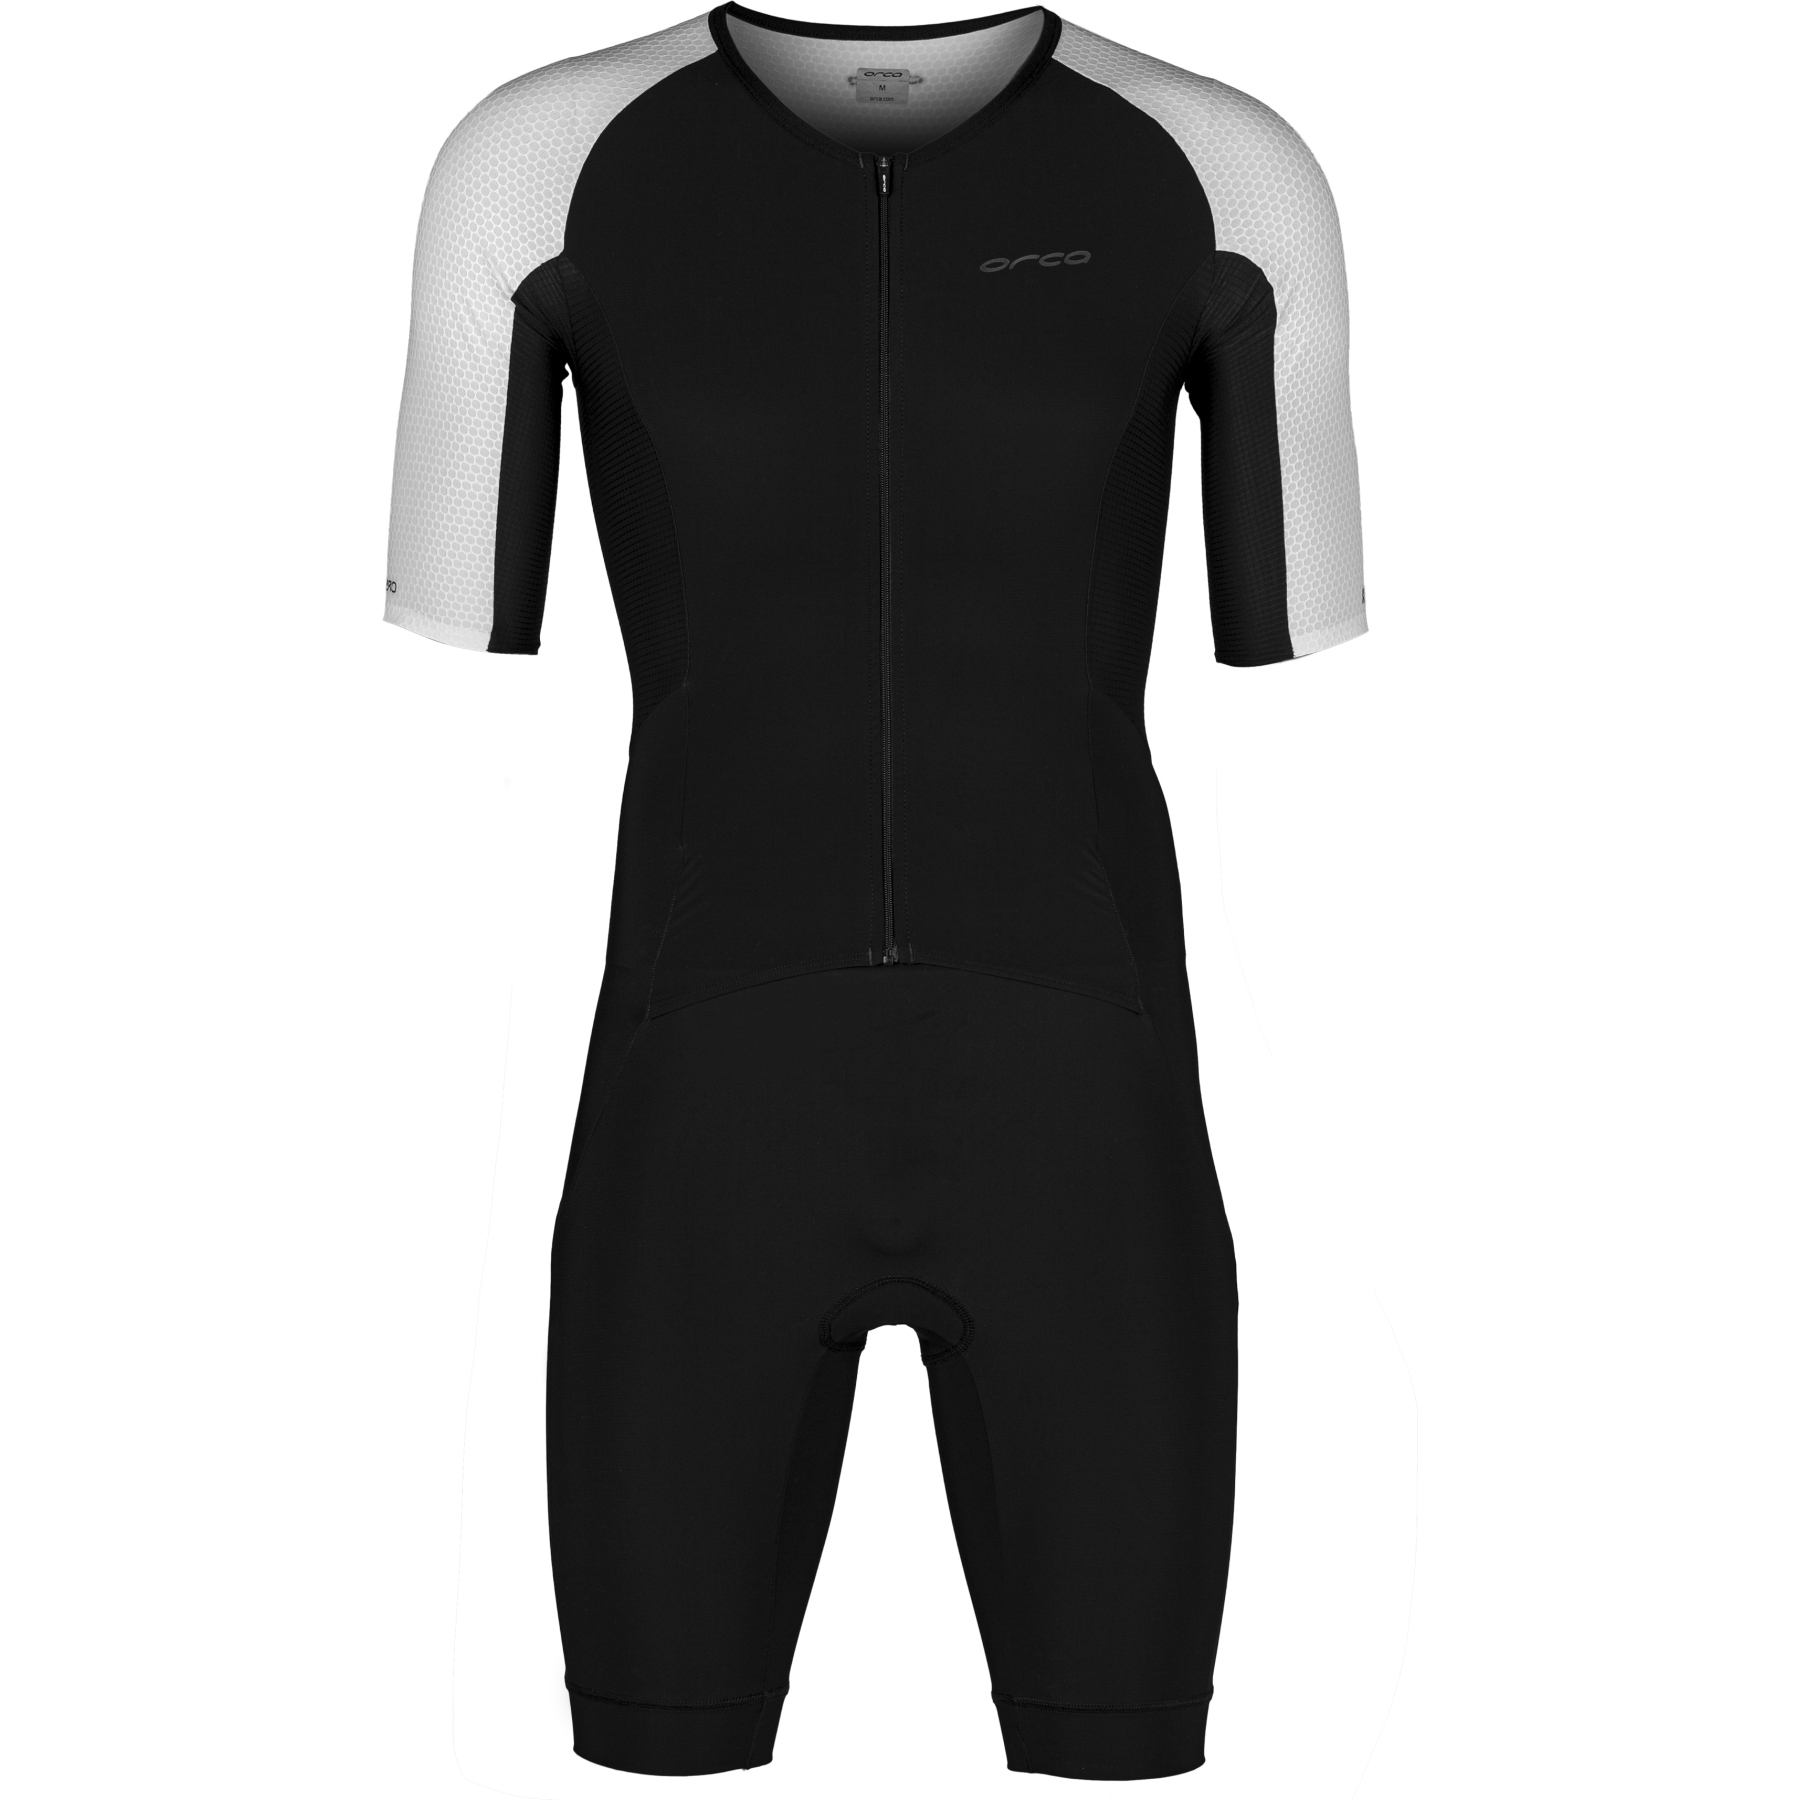 Produktbild von Orca Athlex Aero Race Suit - weiß